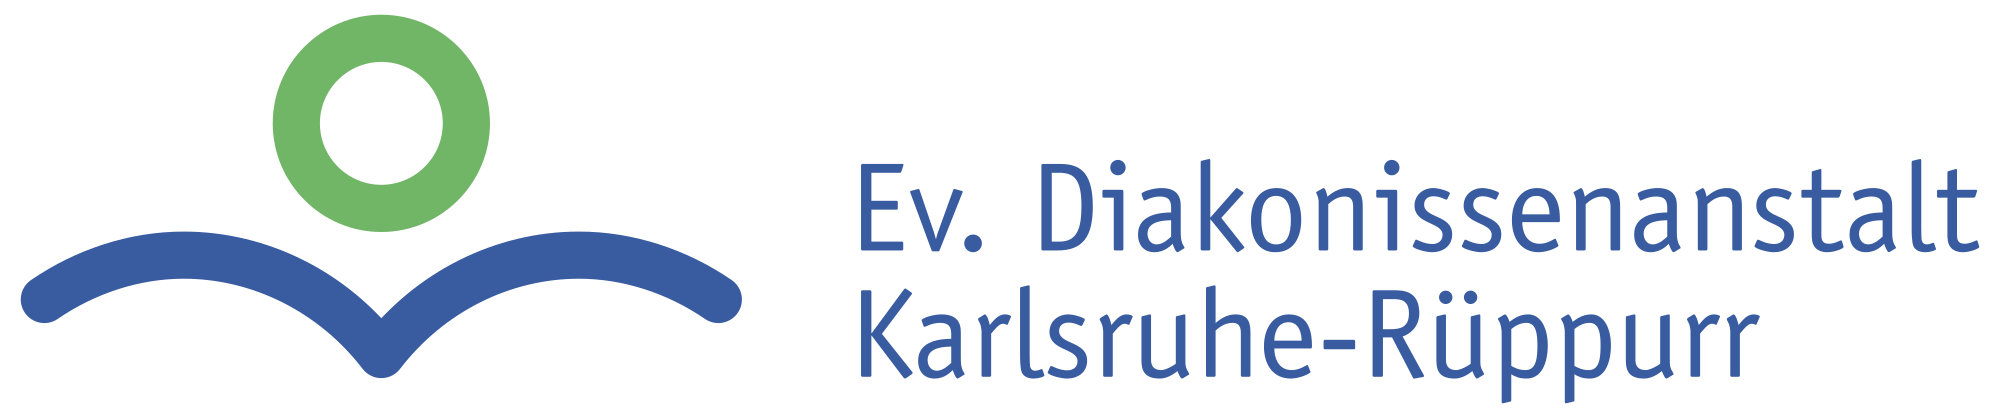 Logo der evangelischen Diakonissenanstalt Karlsruhe-Rüppurr